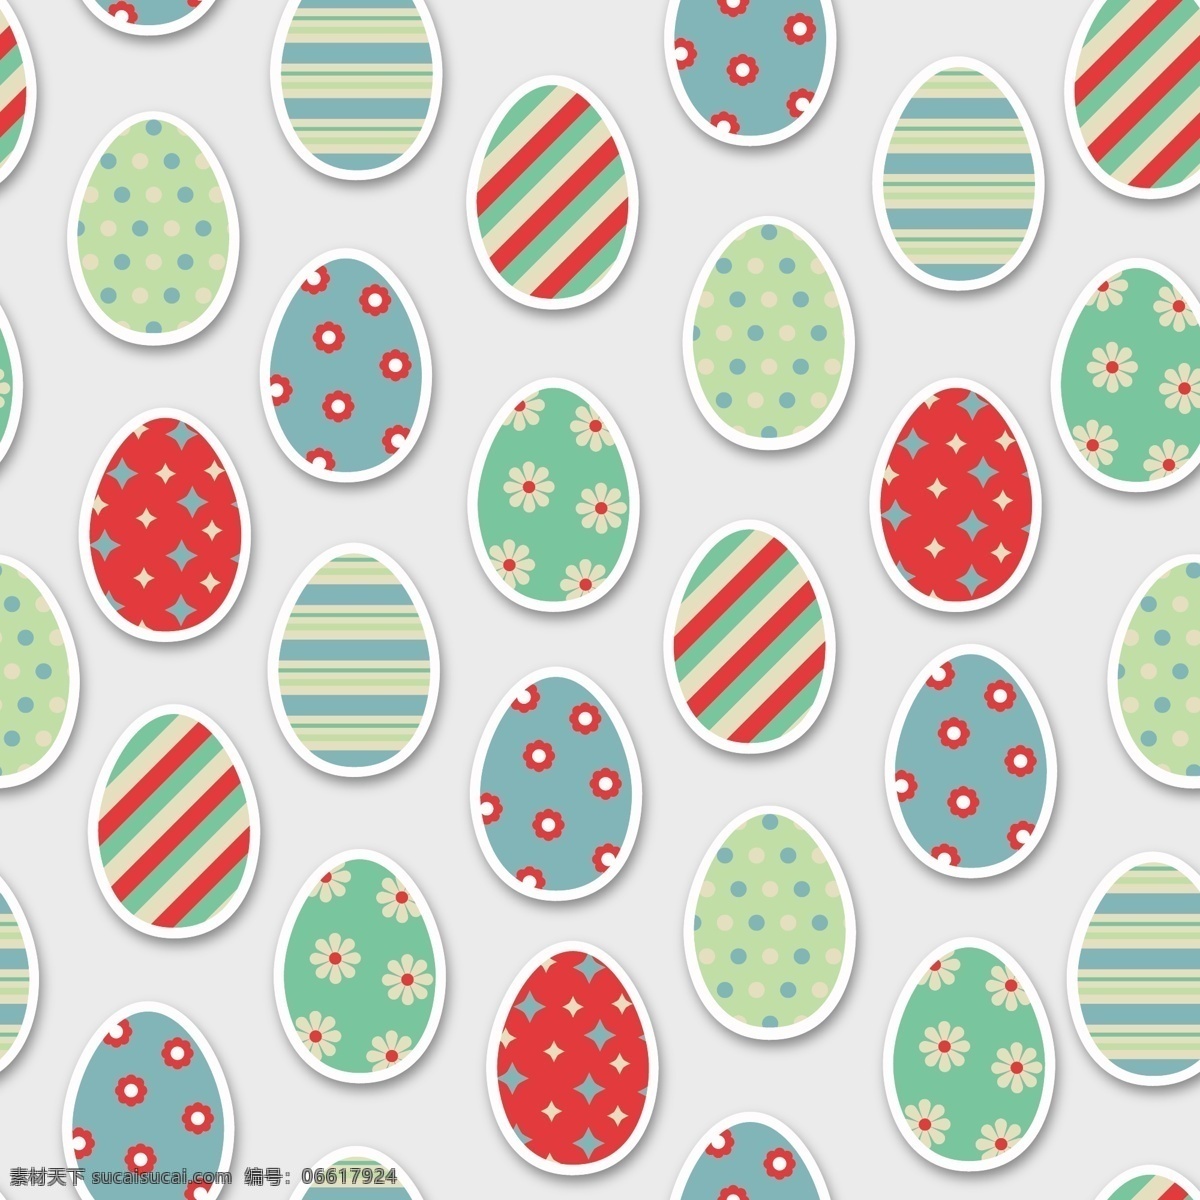 扁平 复活节 鸡蛋 背景 矢量图标 复活节图标 图标设计 时尚 矢量素材 复活蛋 彩蛋 鸡蛋花纹 复活 蛋